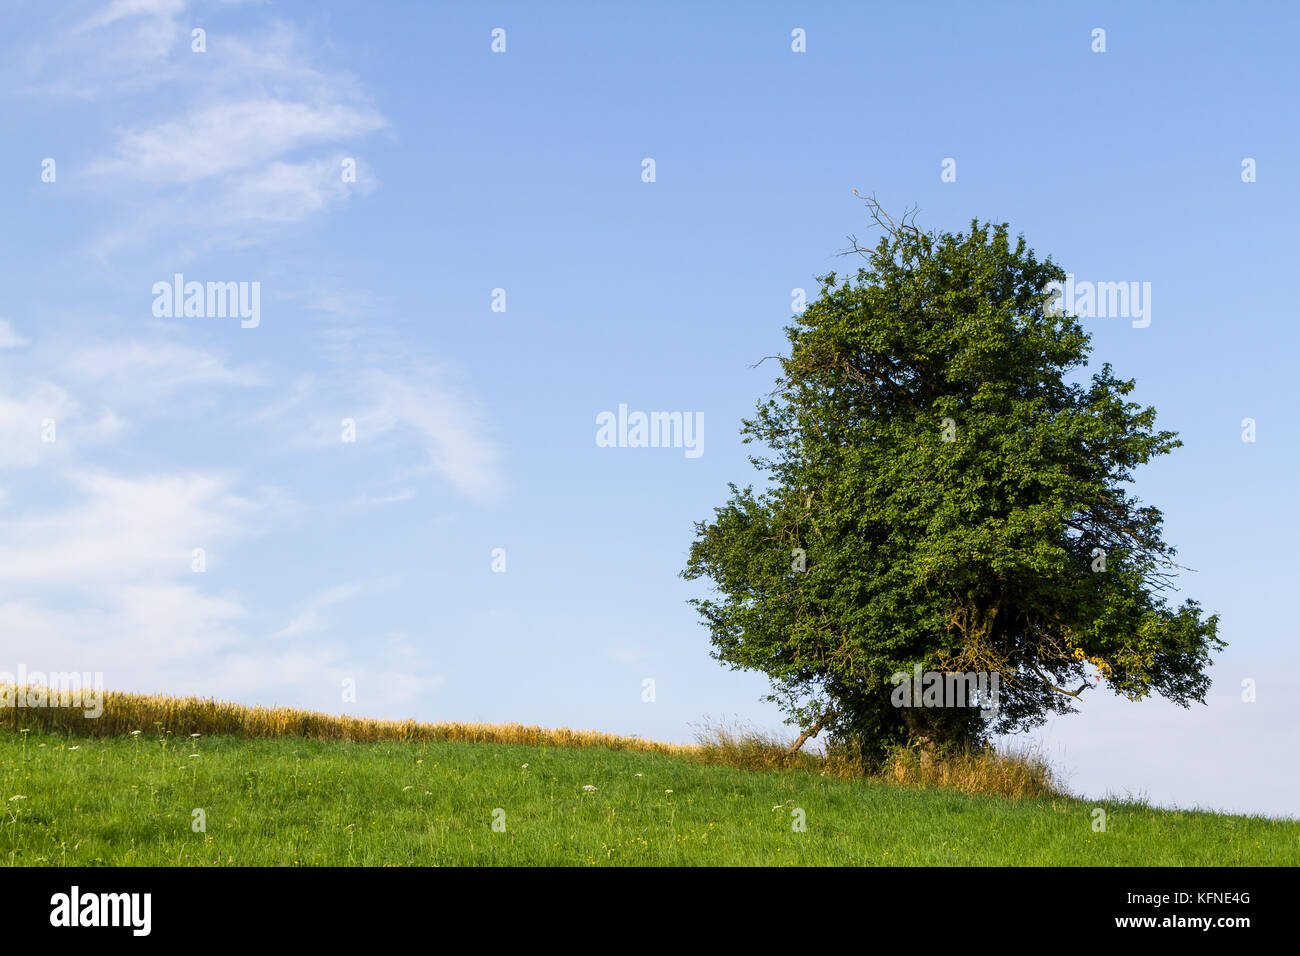 einzeln stehender Baum gegen blauen Himmel Stock Photo